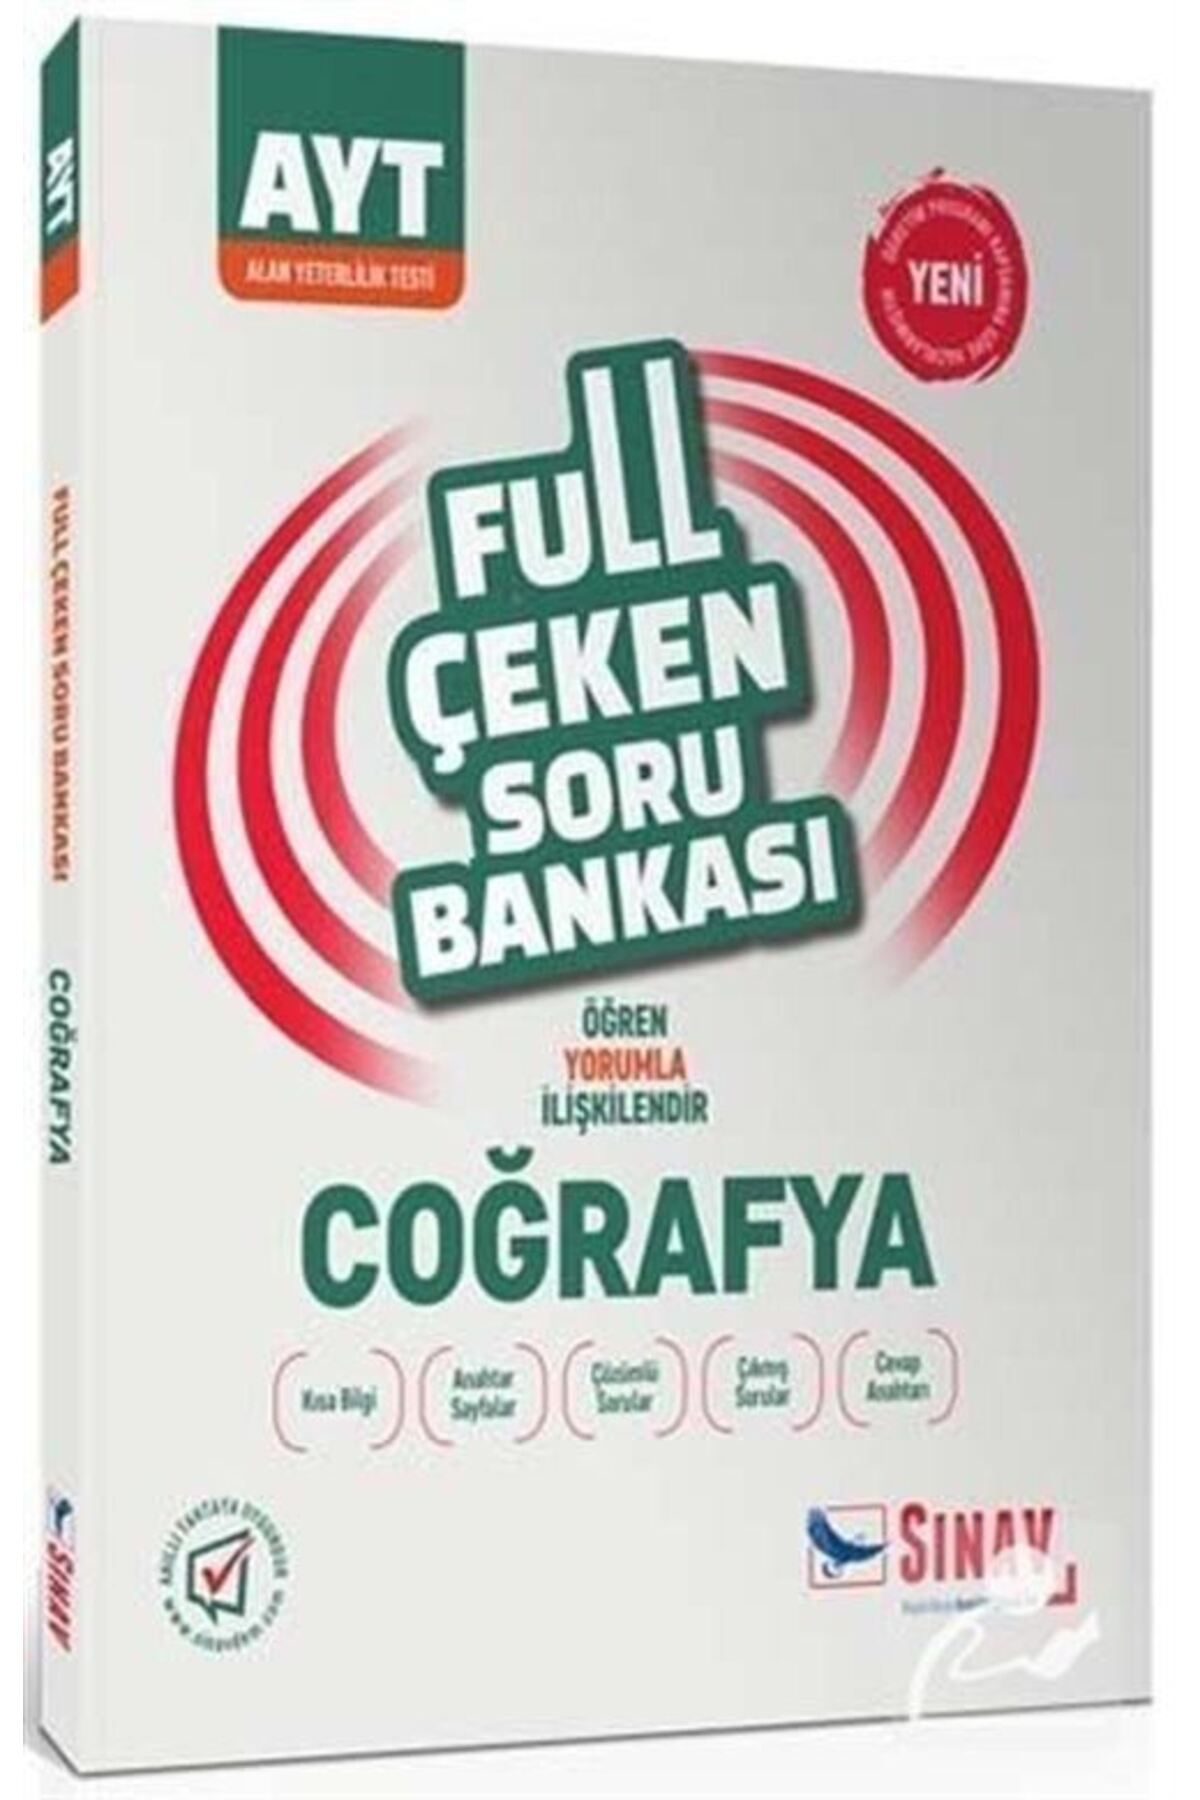 Sınav Yayınları Ayt Full Çeken Soru Bankası Coğrafya